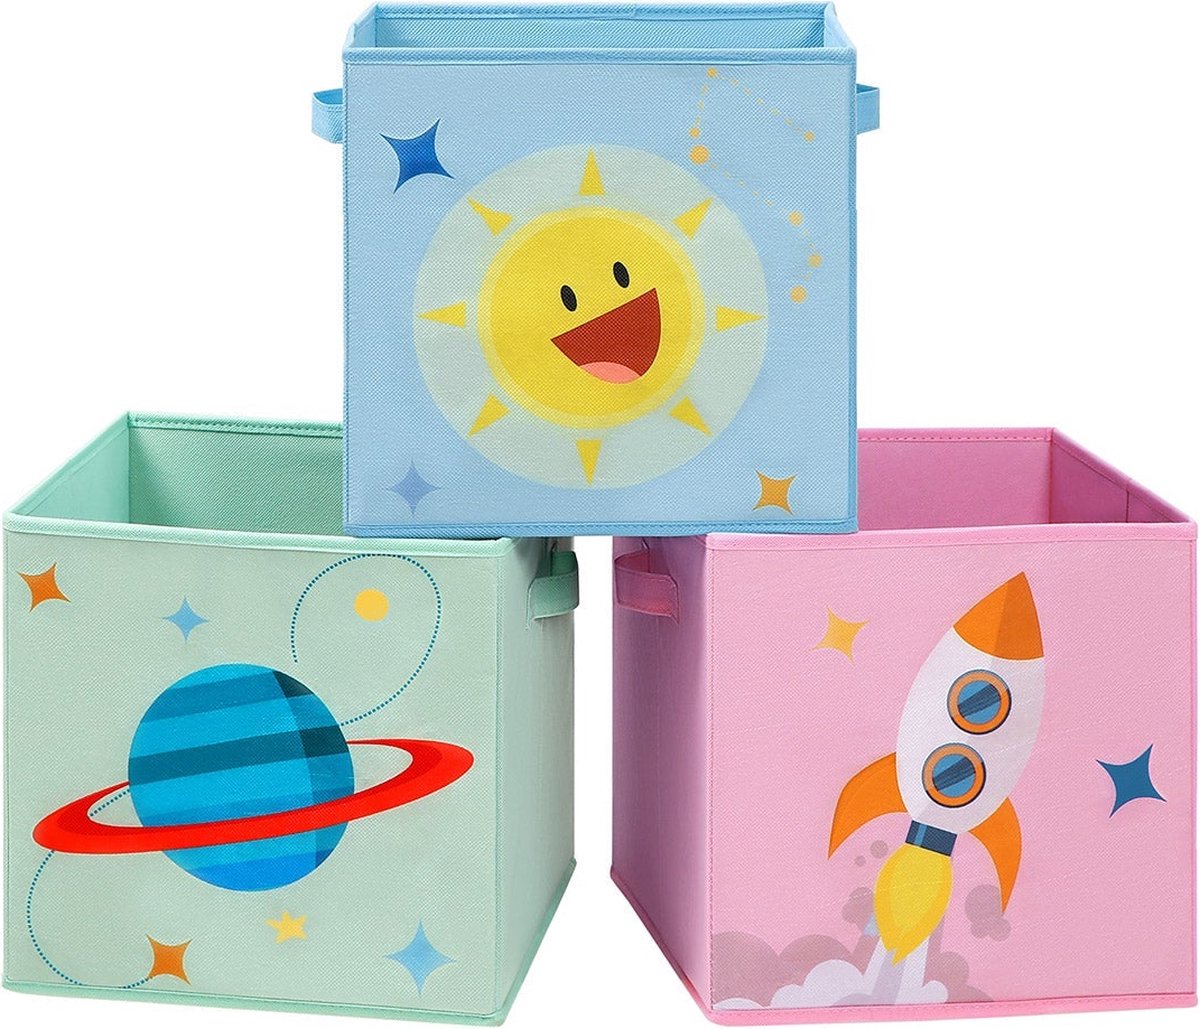 Opbergboxen - Set van 3 - Speelgoed - Stoffen dozen - Kinderkamers - Blauw / Groen / Roze